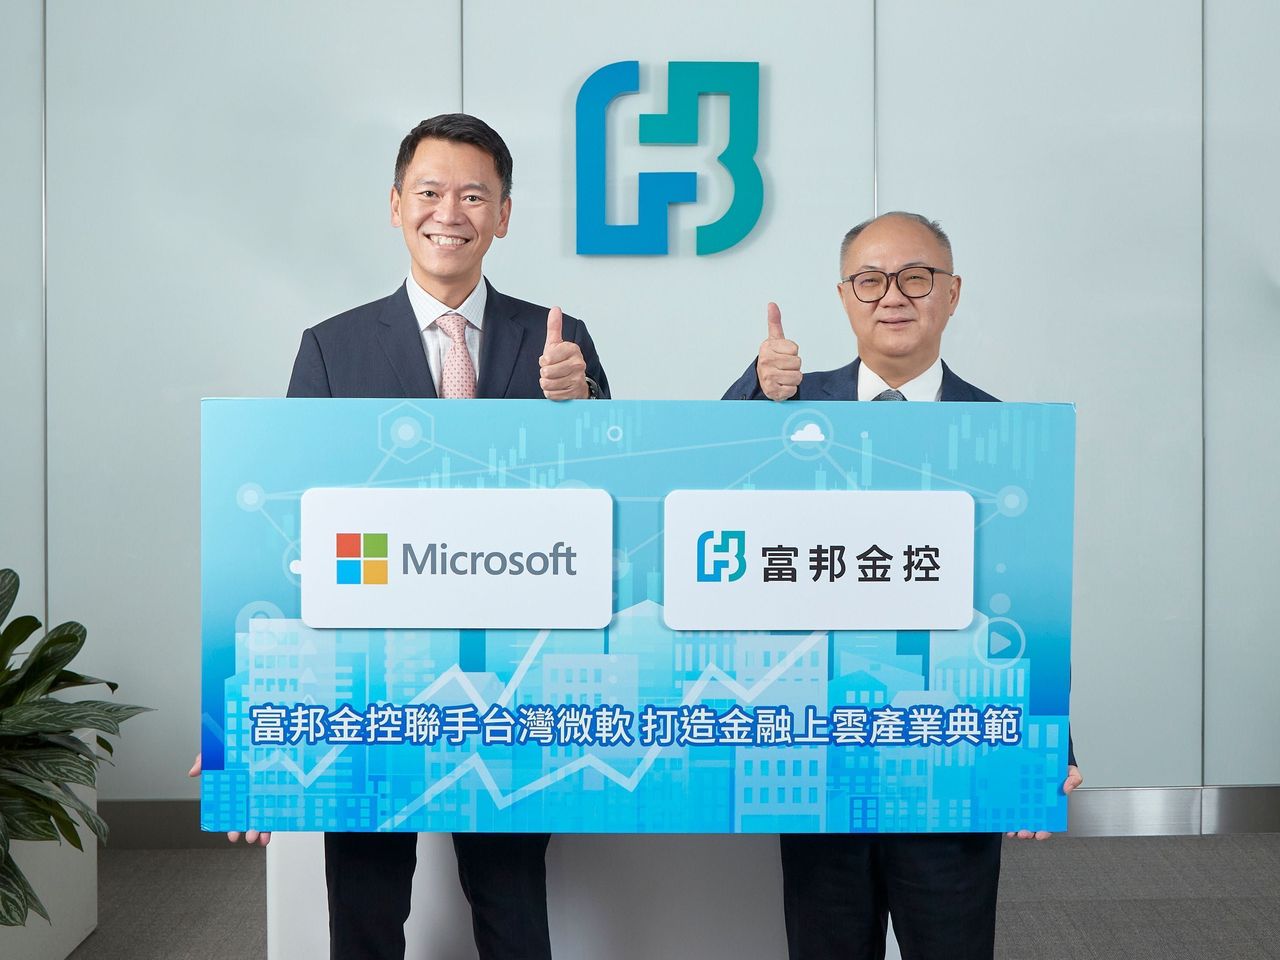 富邦金控總經理韓蔚廷(右)與台灣微軟總經理卞志祥(左)合影。富邦金控/提供